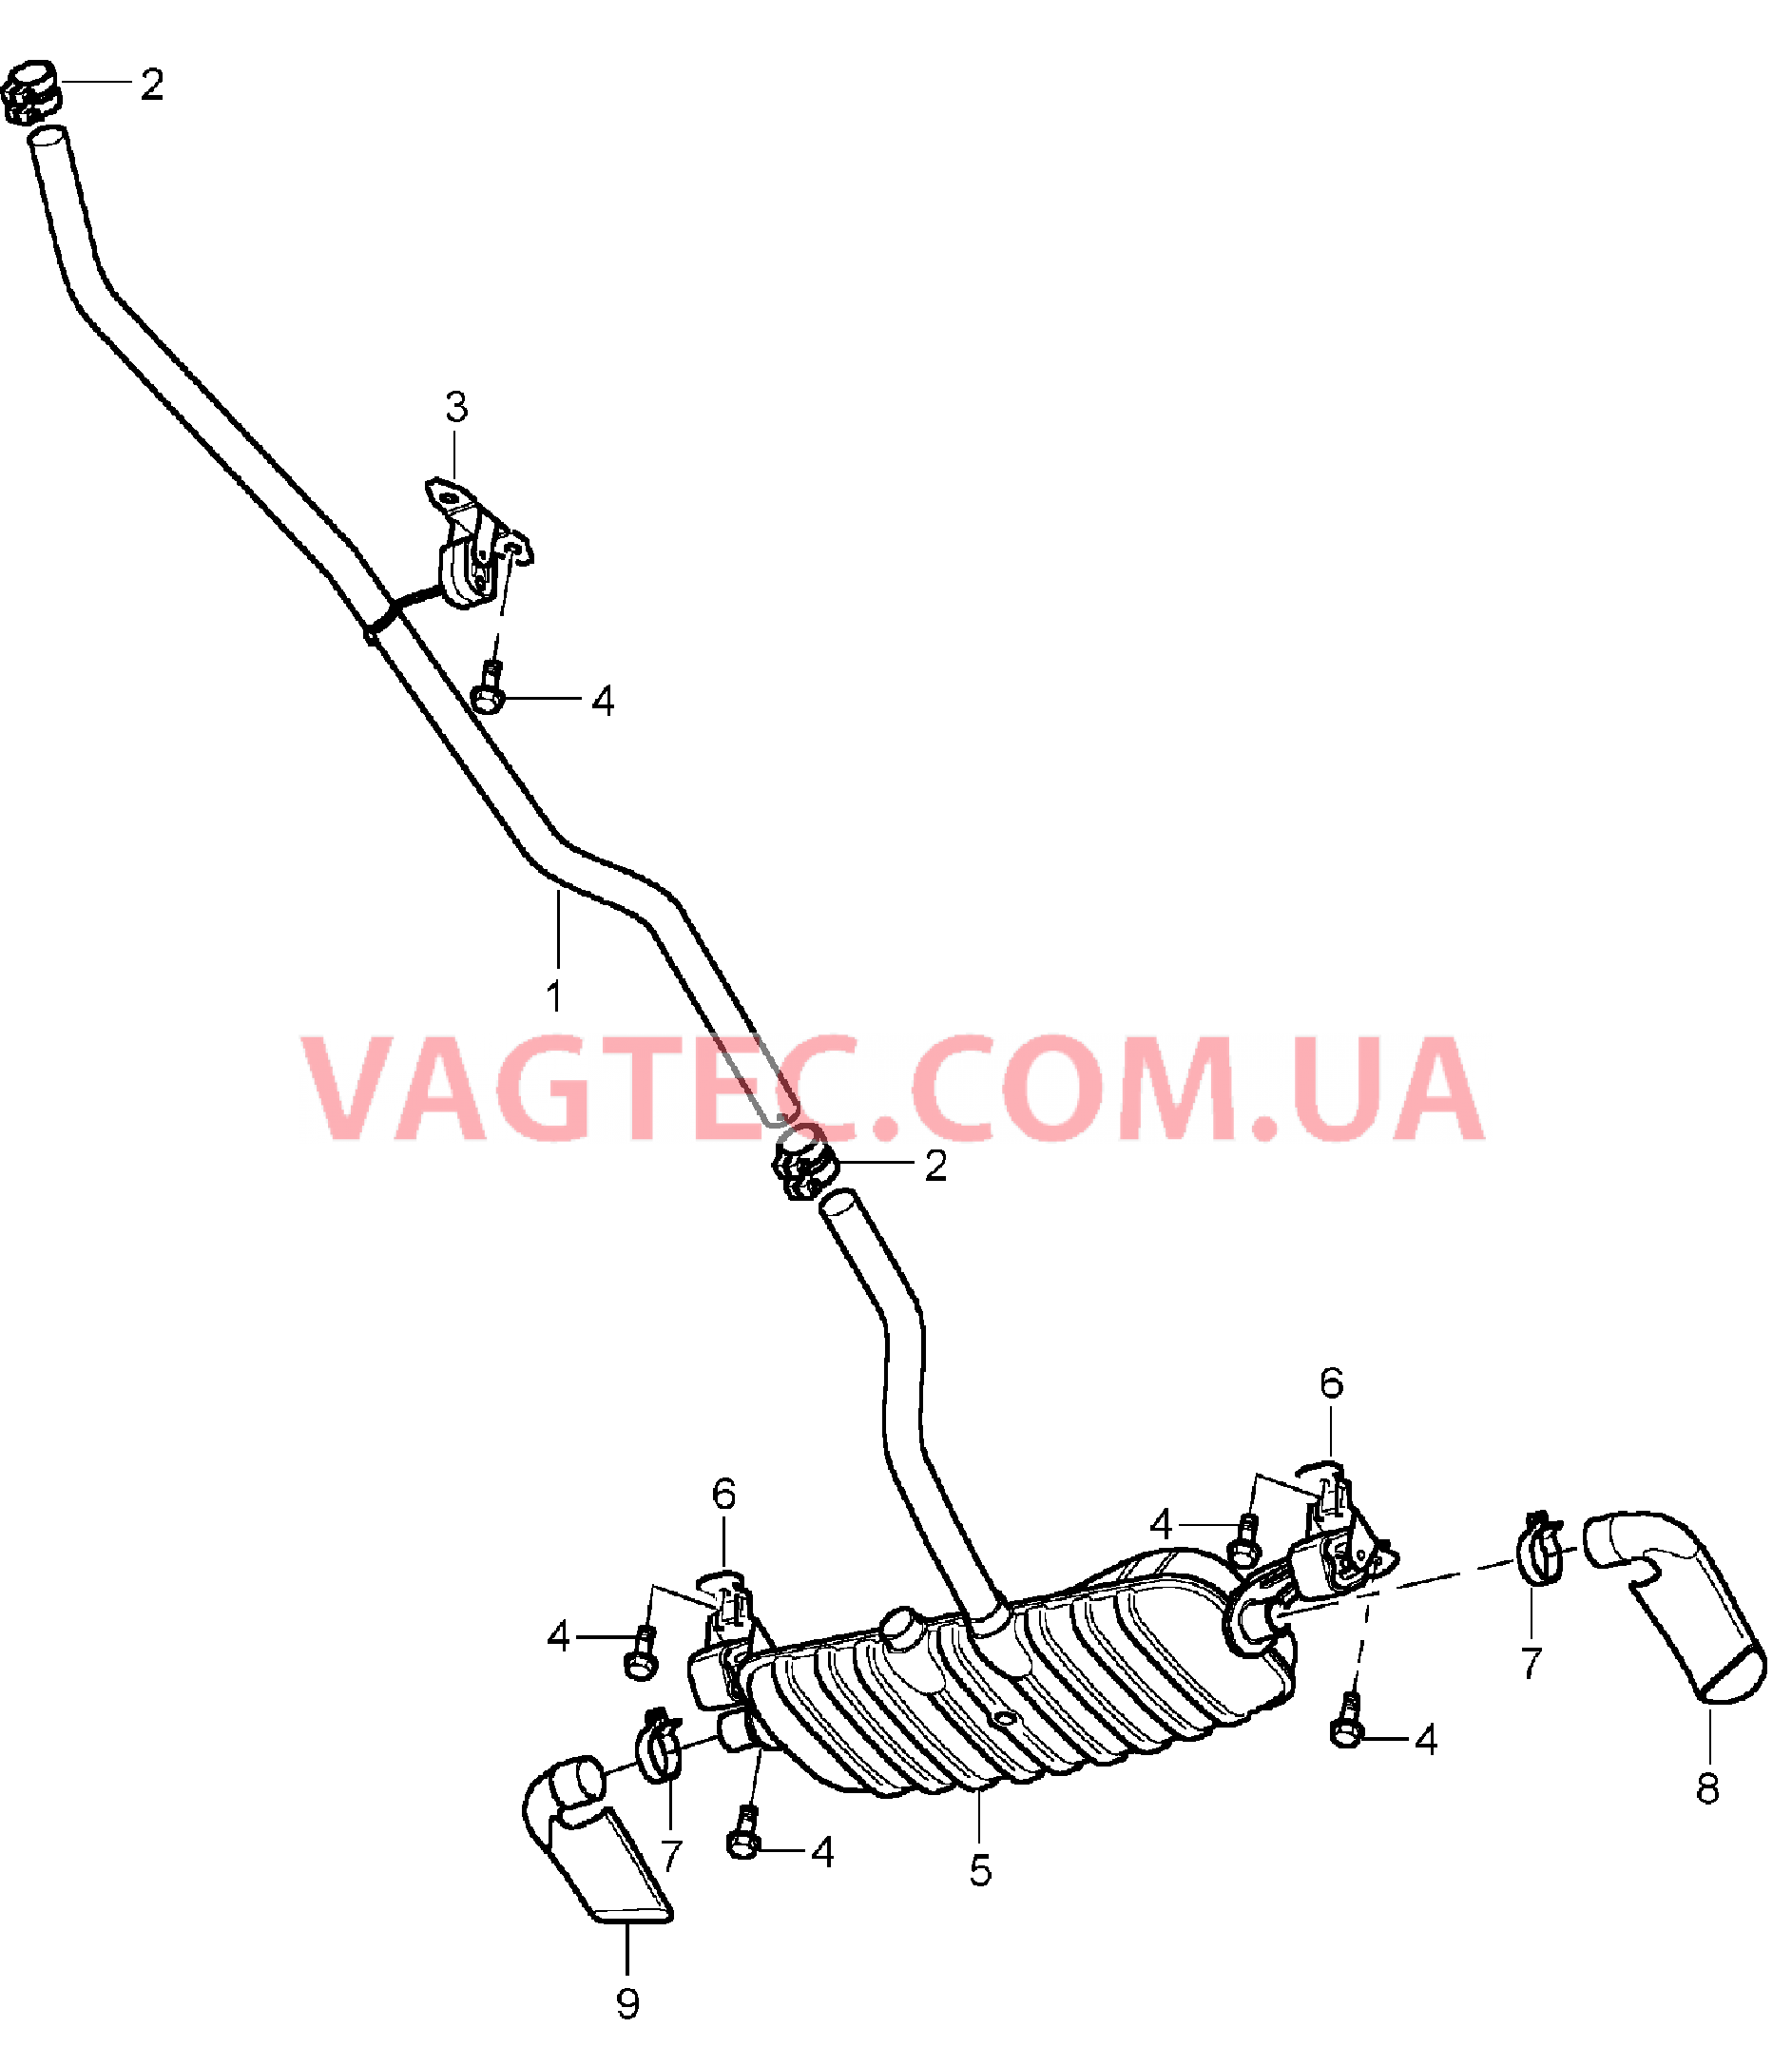 202-012 Выпускная система, Предварительный глушитель, Основной глушитель, Выпускная труба
						
						ID9J для PORSCHE Cayenne 2003-2006USA